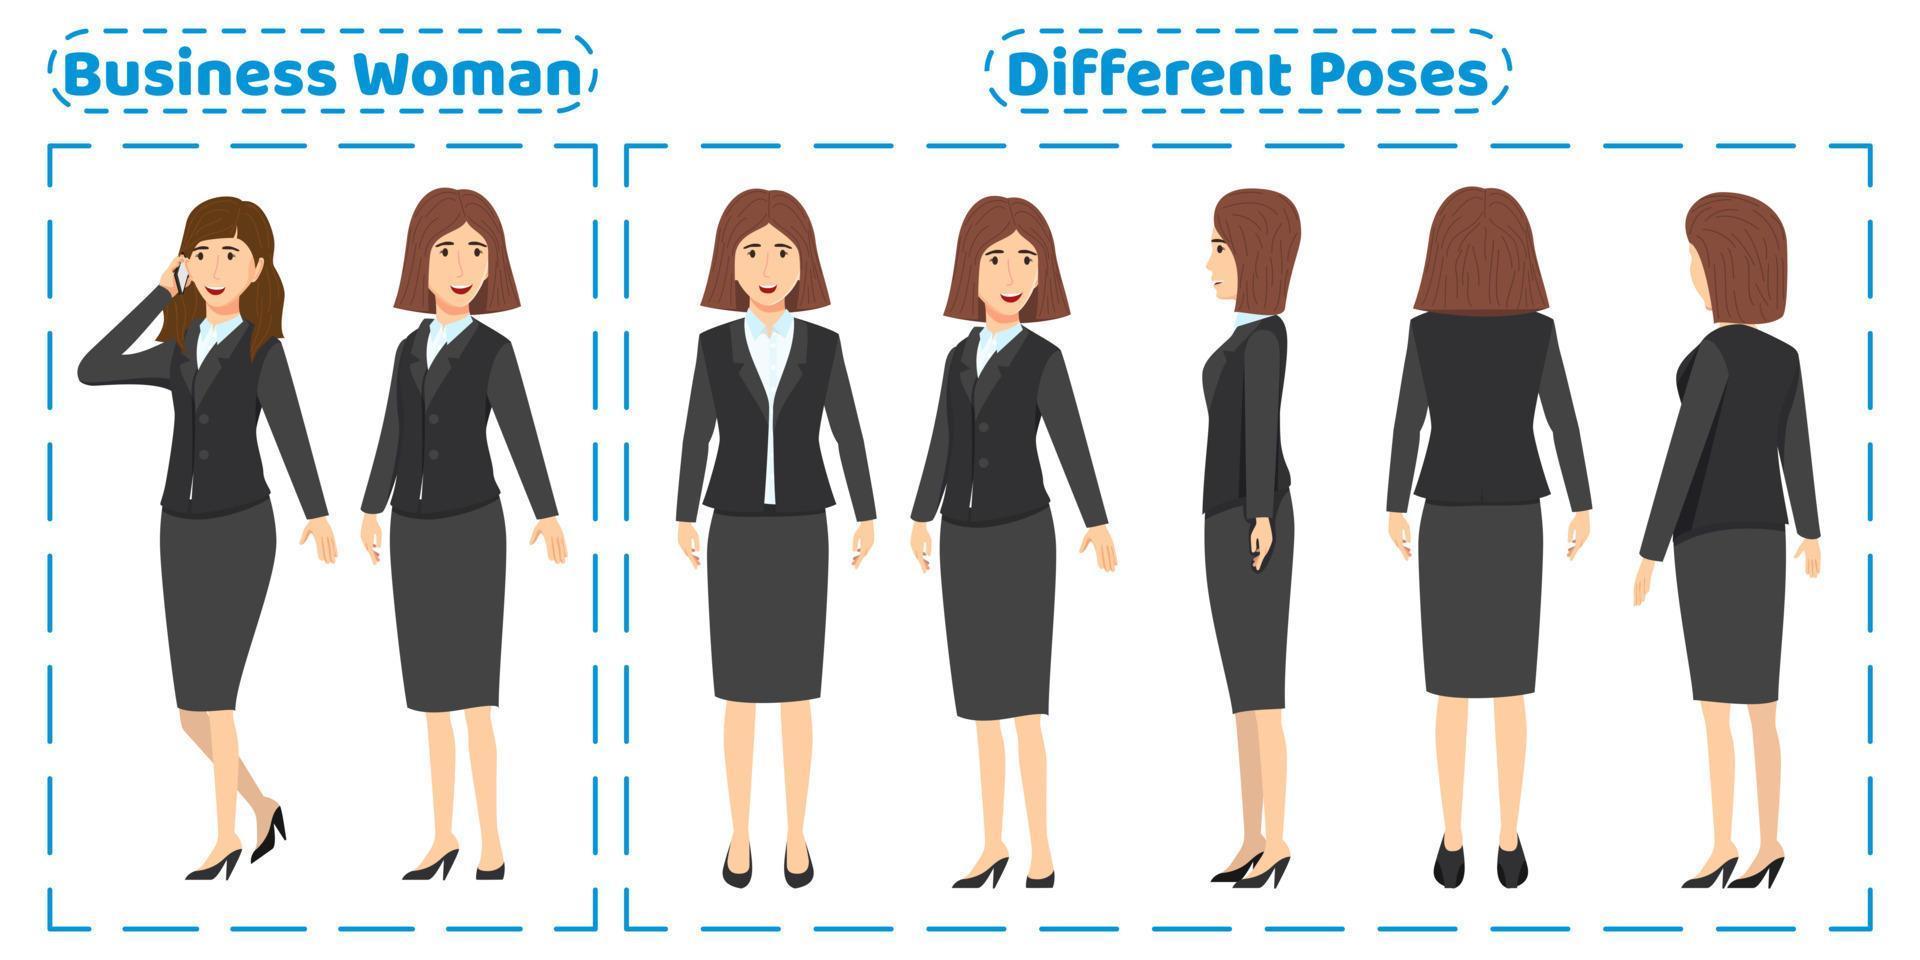 Conjunto de caracteres de mujer de negocios con diferentes poses vista frontal lateral posterior con expresiones faciales alegres creación de animación aislada vector